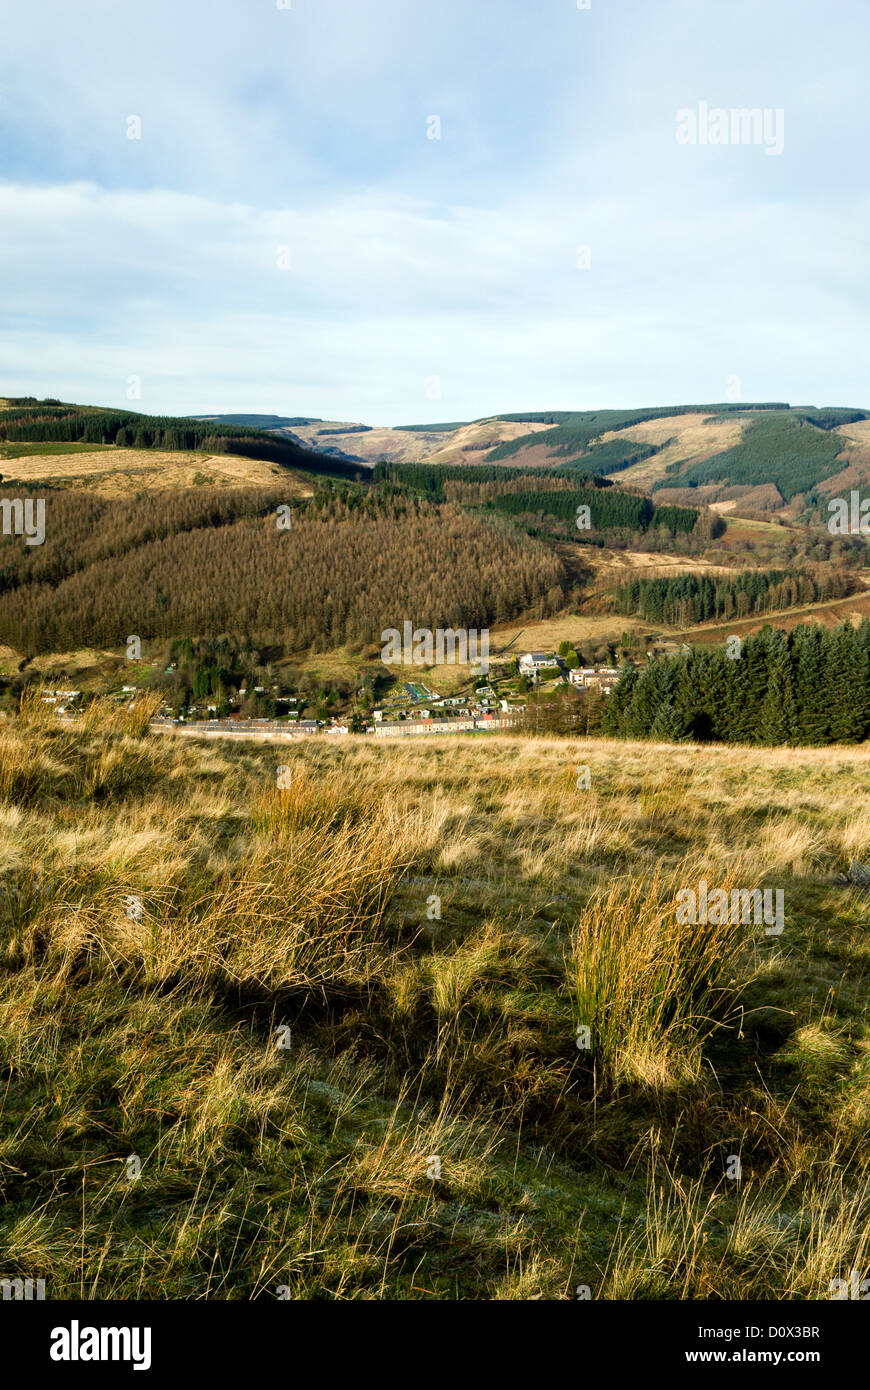 Vista de cwmparc y el Rhondda Valley desde el sur de Gales clawdd bwlch y valles uk Foto de stock